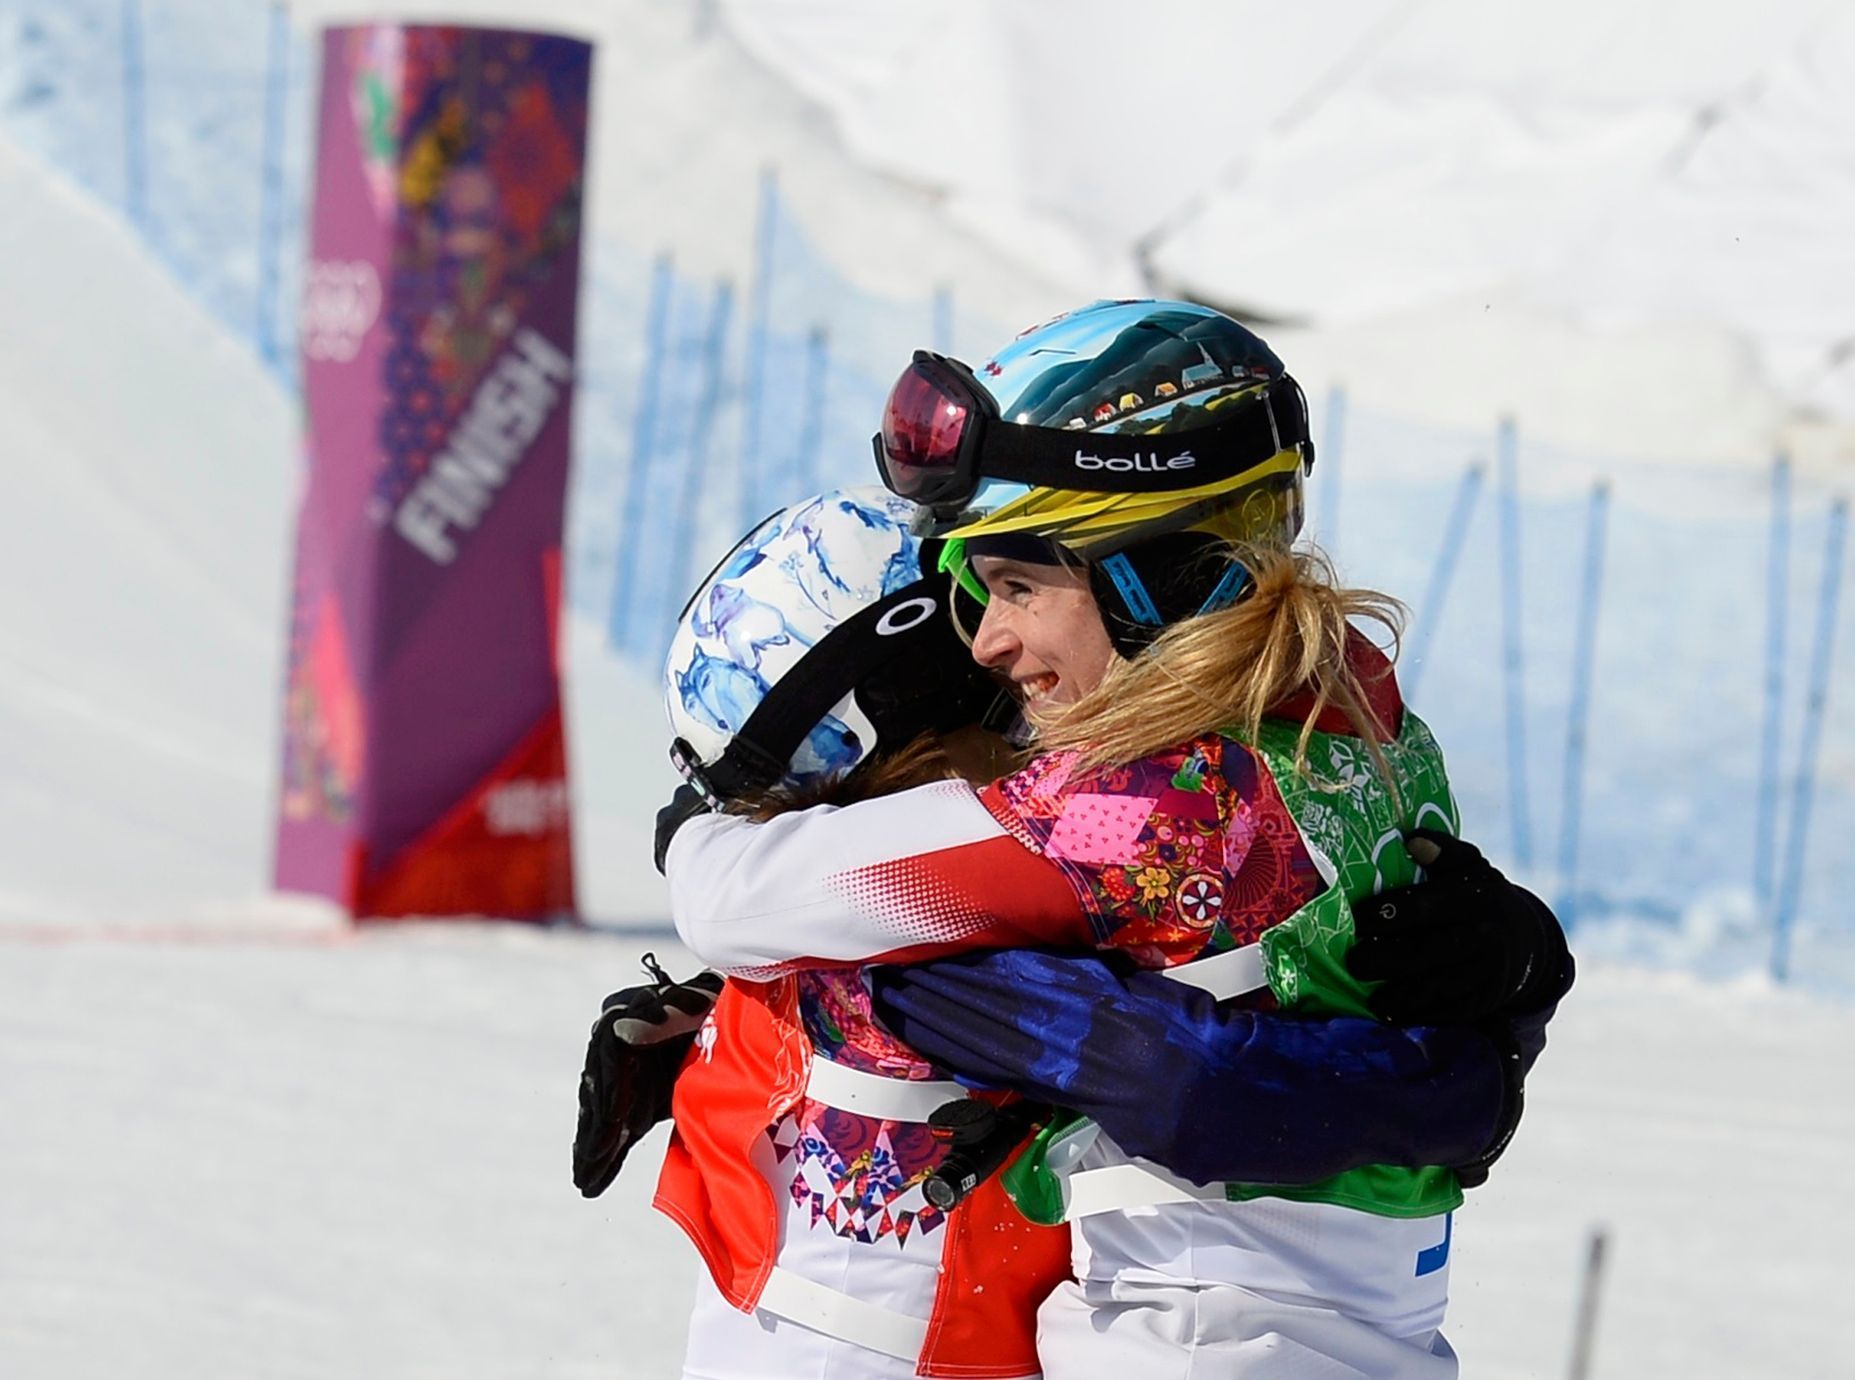 Soči 2014, snowboardcross: vítězná Eva Samková a druhá Dominique Maltaisová z Kanady